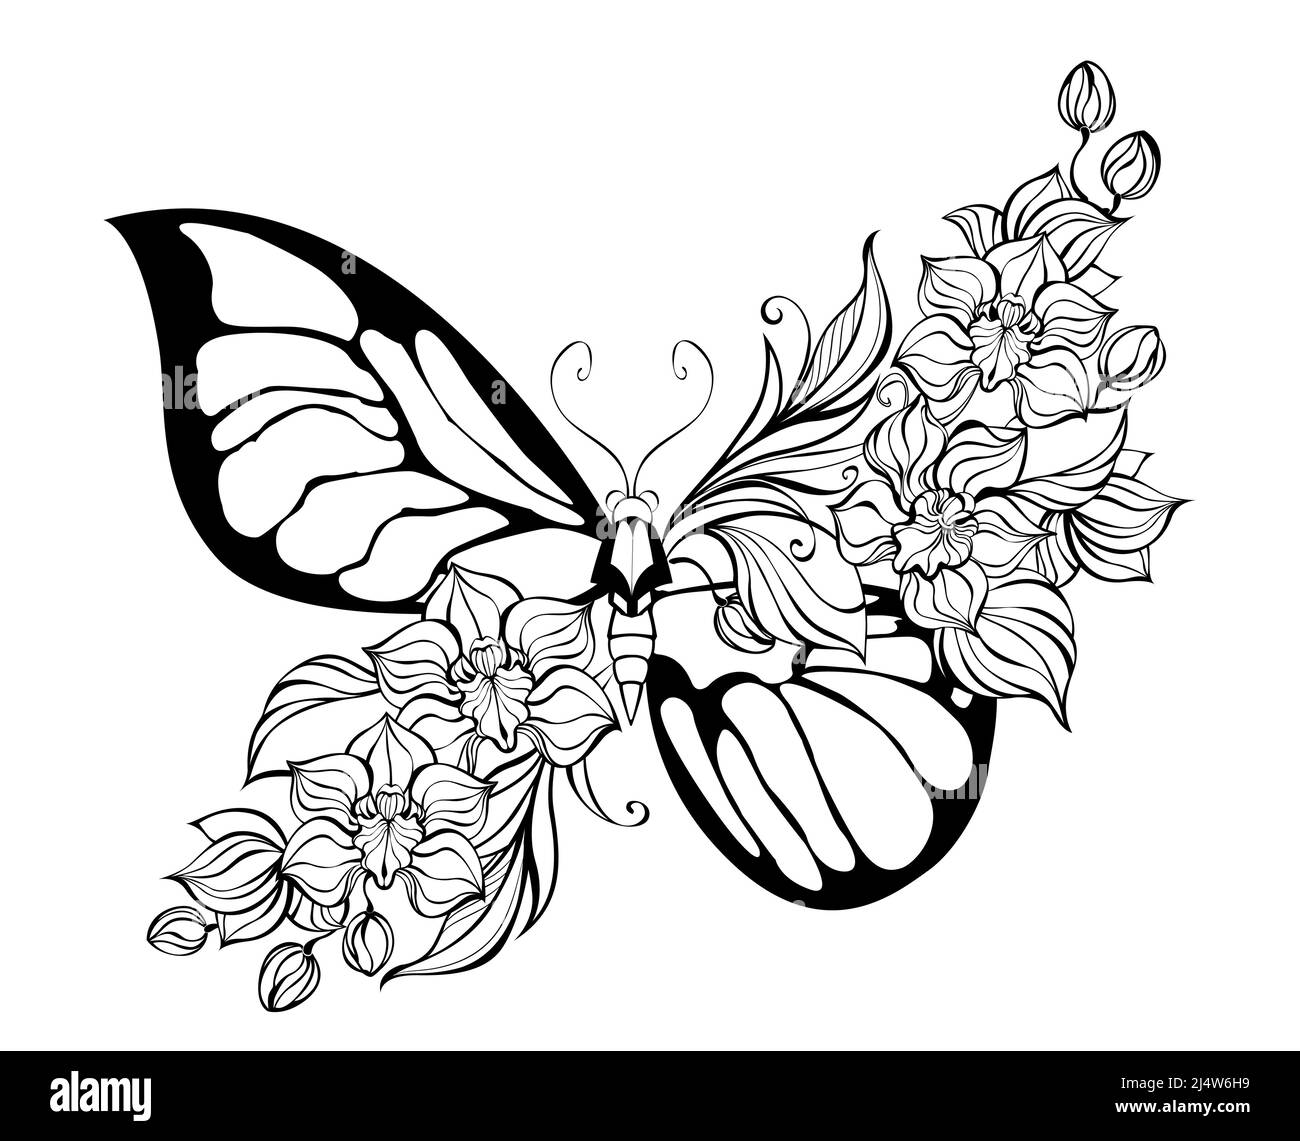 Contour, stilisierter, künstlerischer Schmetterling, verziert mit exotischen Orchideen auf weißem Hintergrund. Malbuch. Stock Vektor